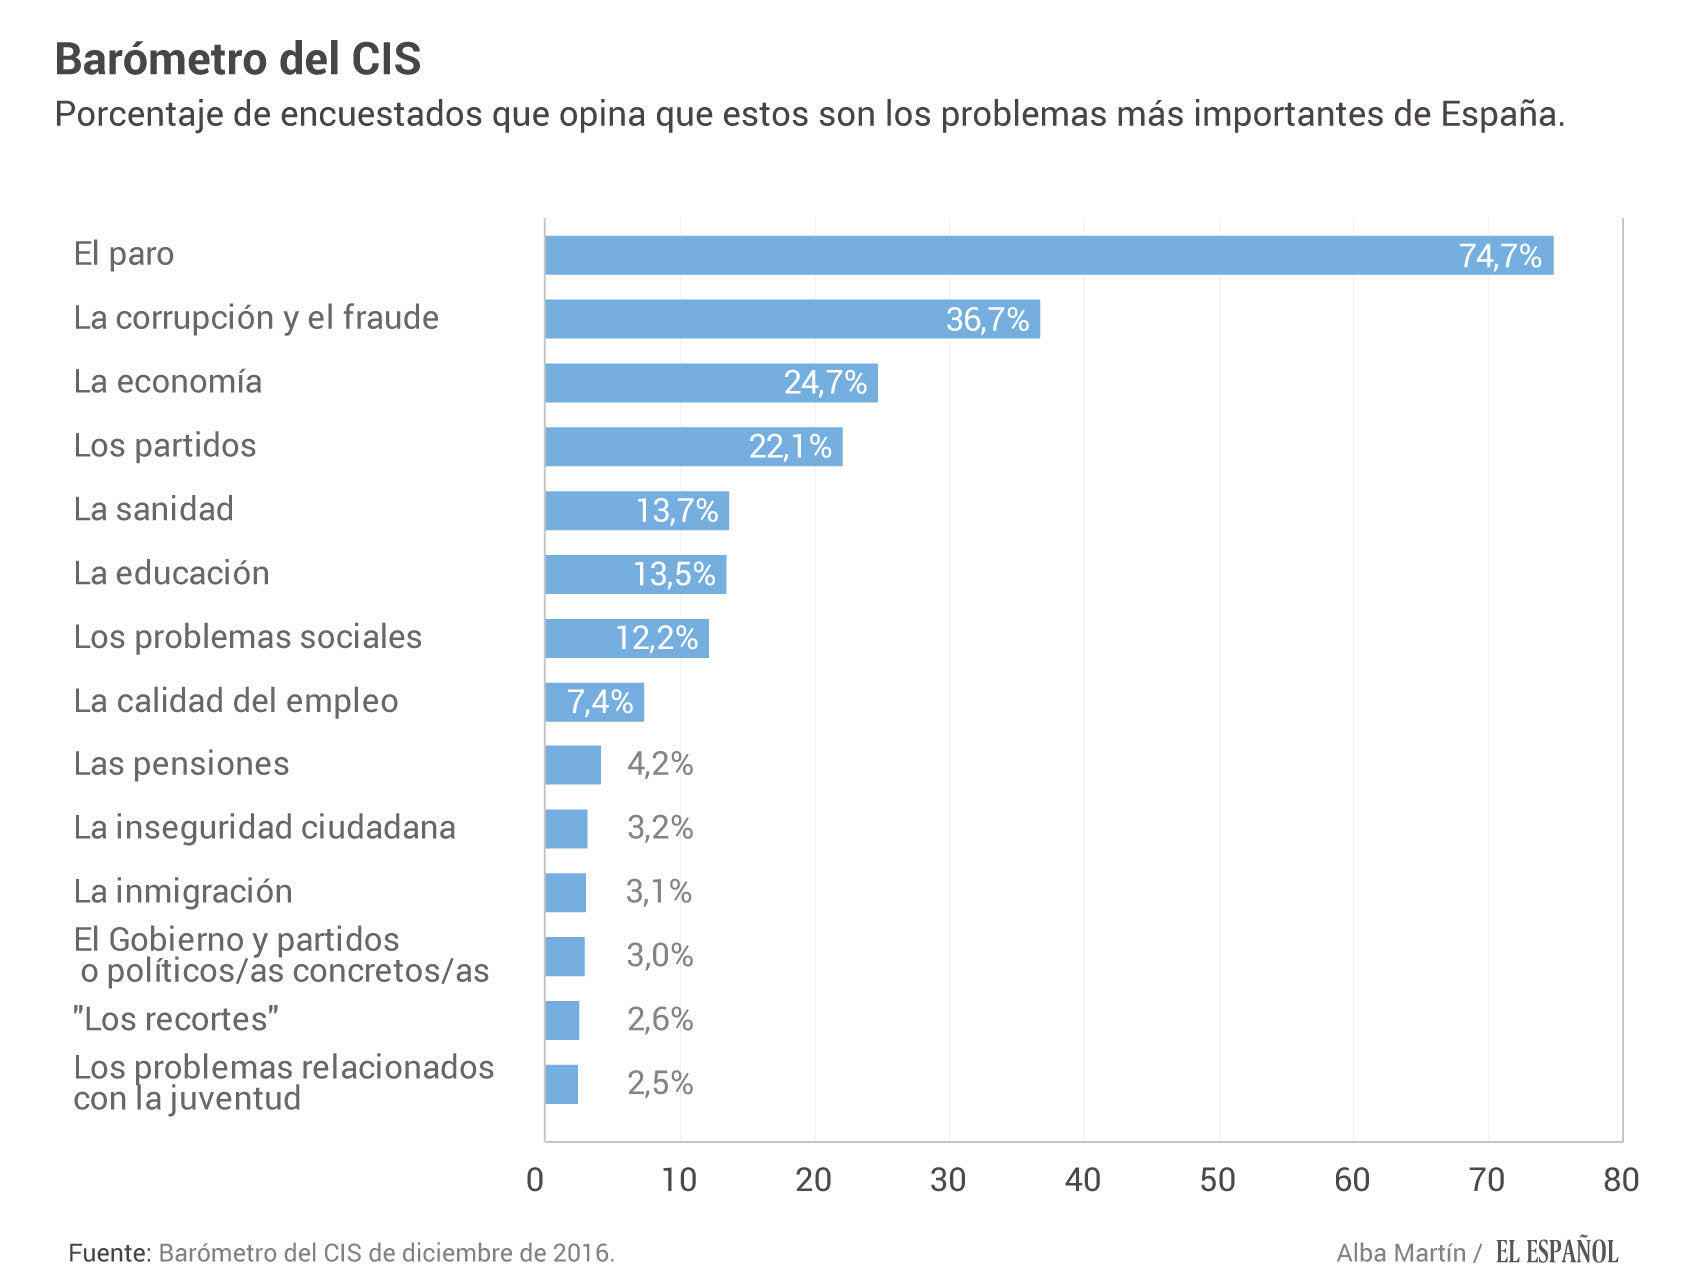 El paro, la corrupción y los partidos, principales problemas para los españoles, según el CIS